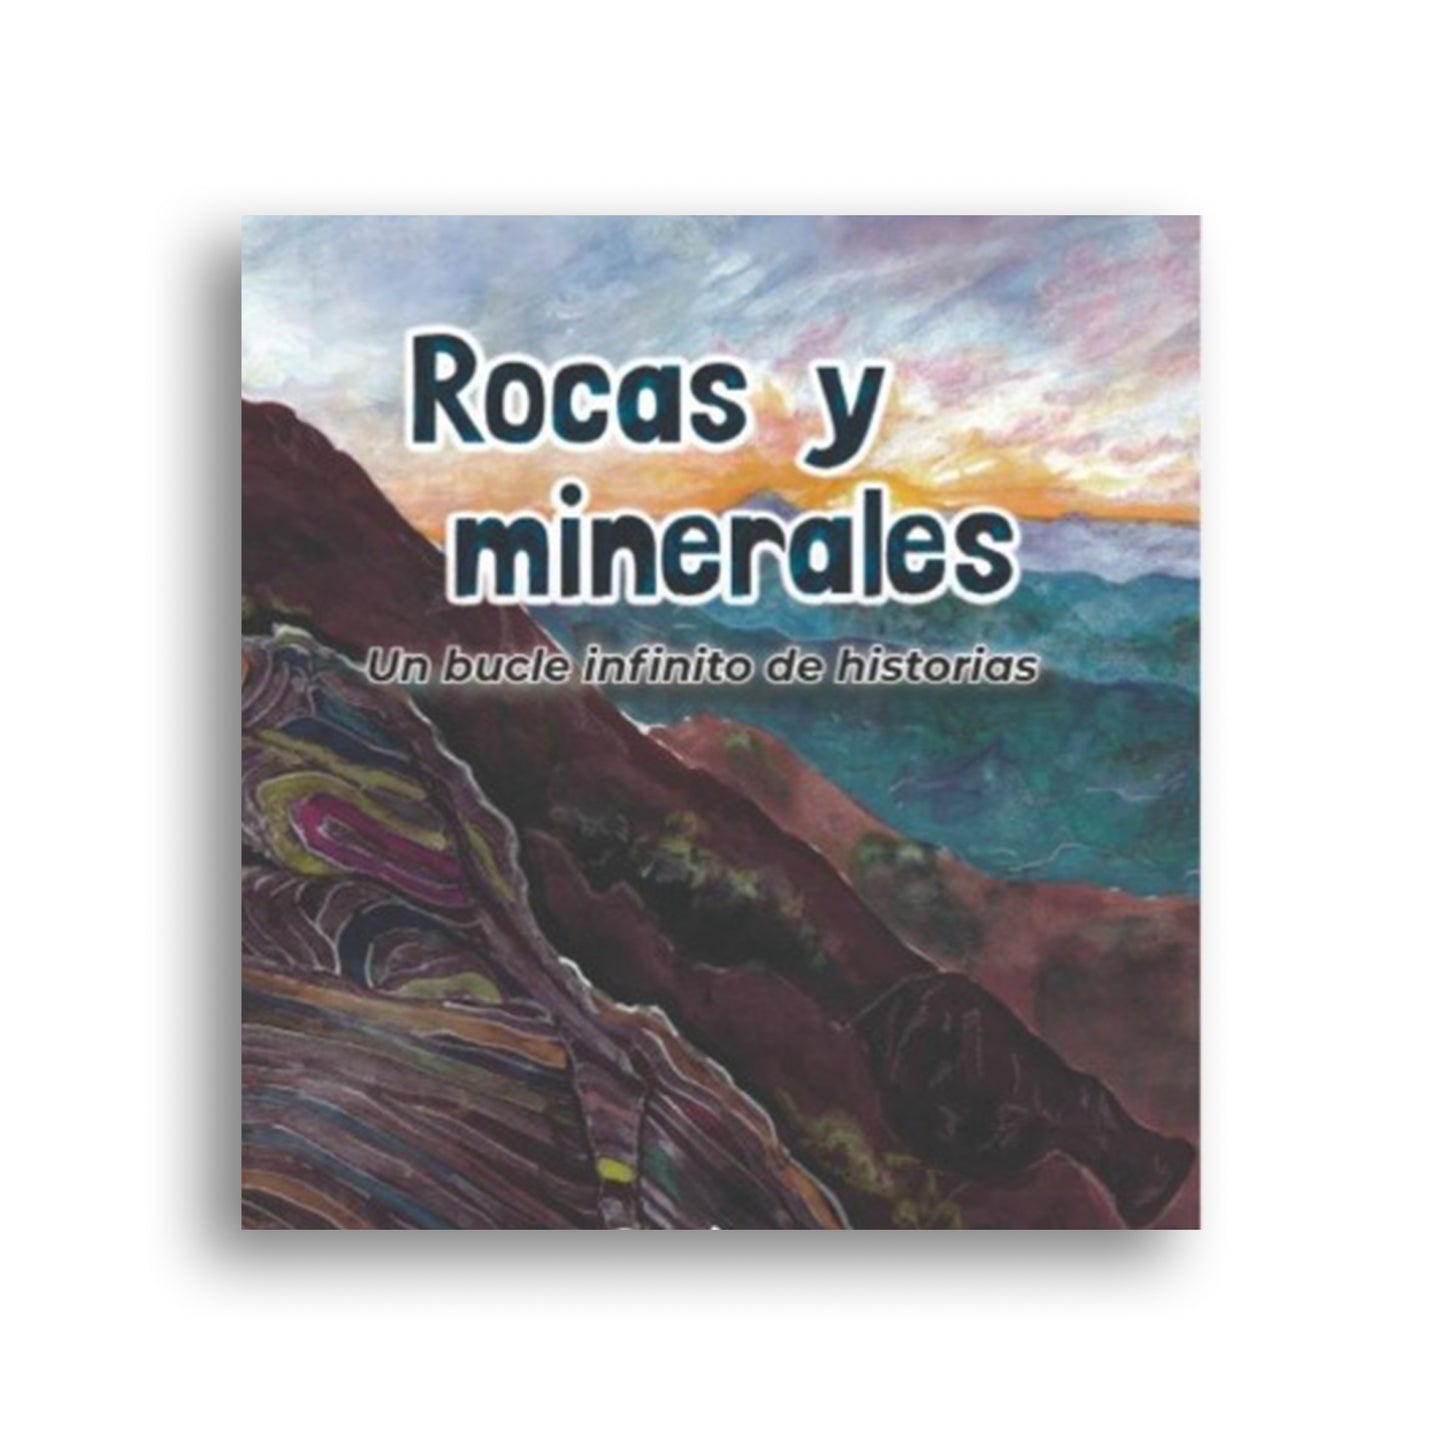 Rocas y minerales: Un bucle infinito de historias